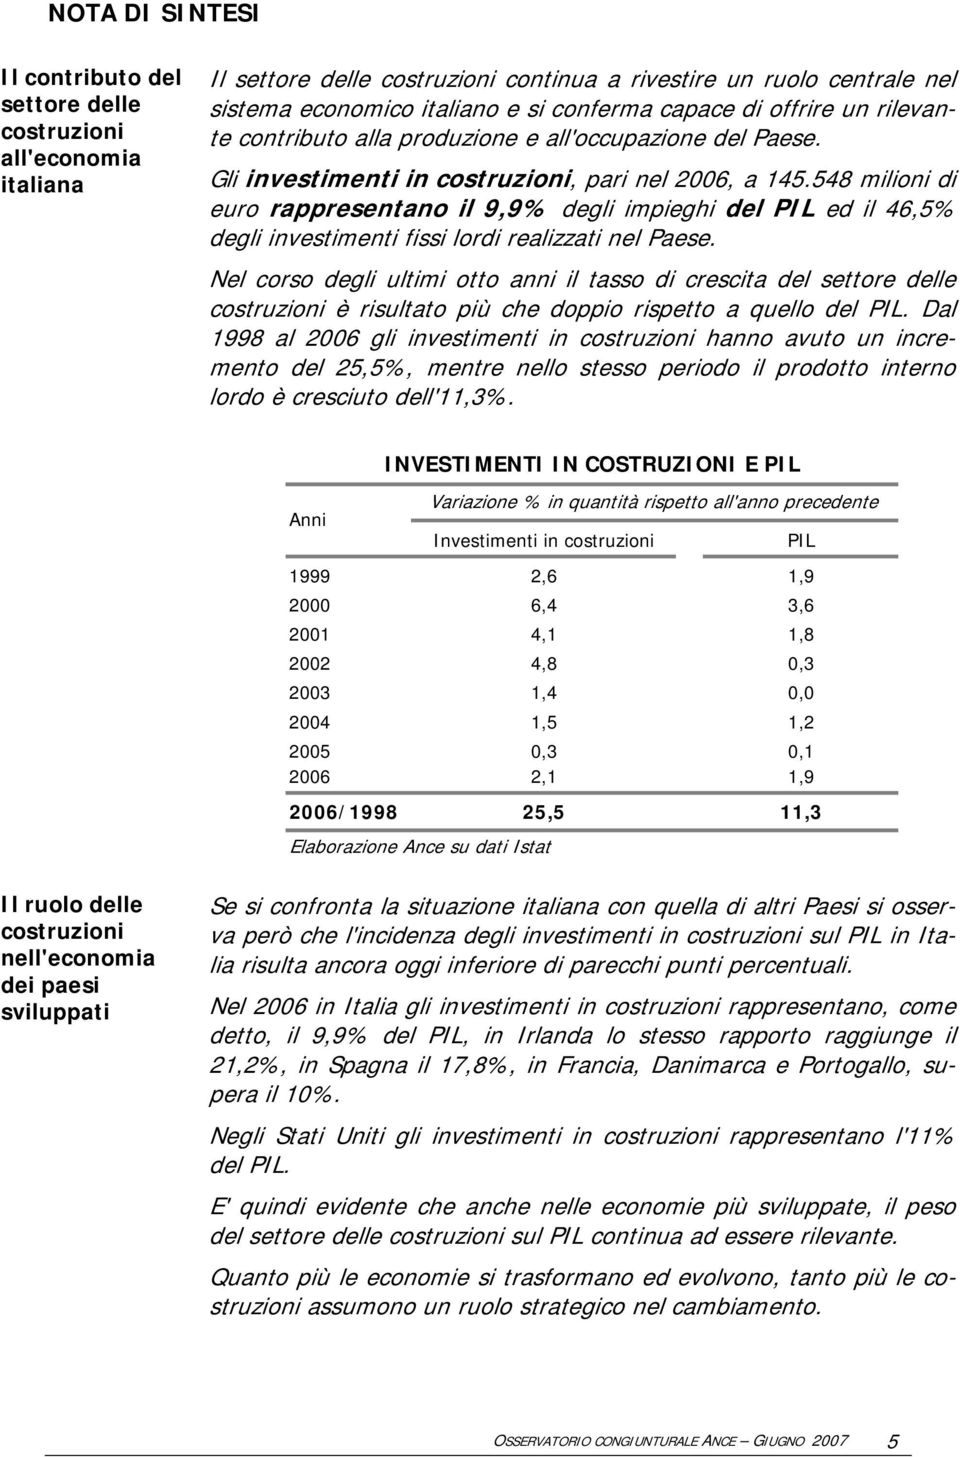 548 milioni di euro rappresentano il 9,9% degli impieghi del PIL ed il 46,5% degli investimenti fissi lordi realizzati nel Paese.